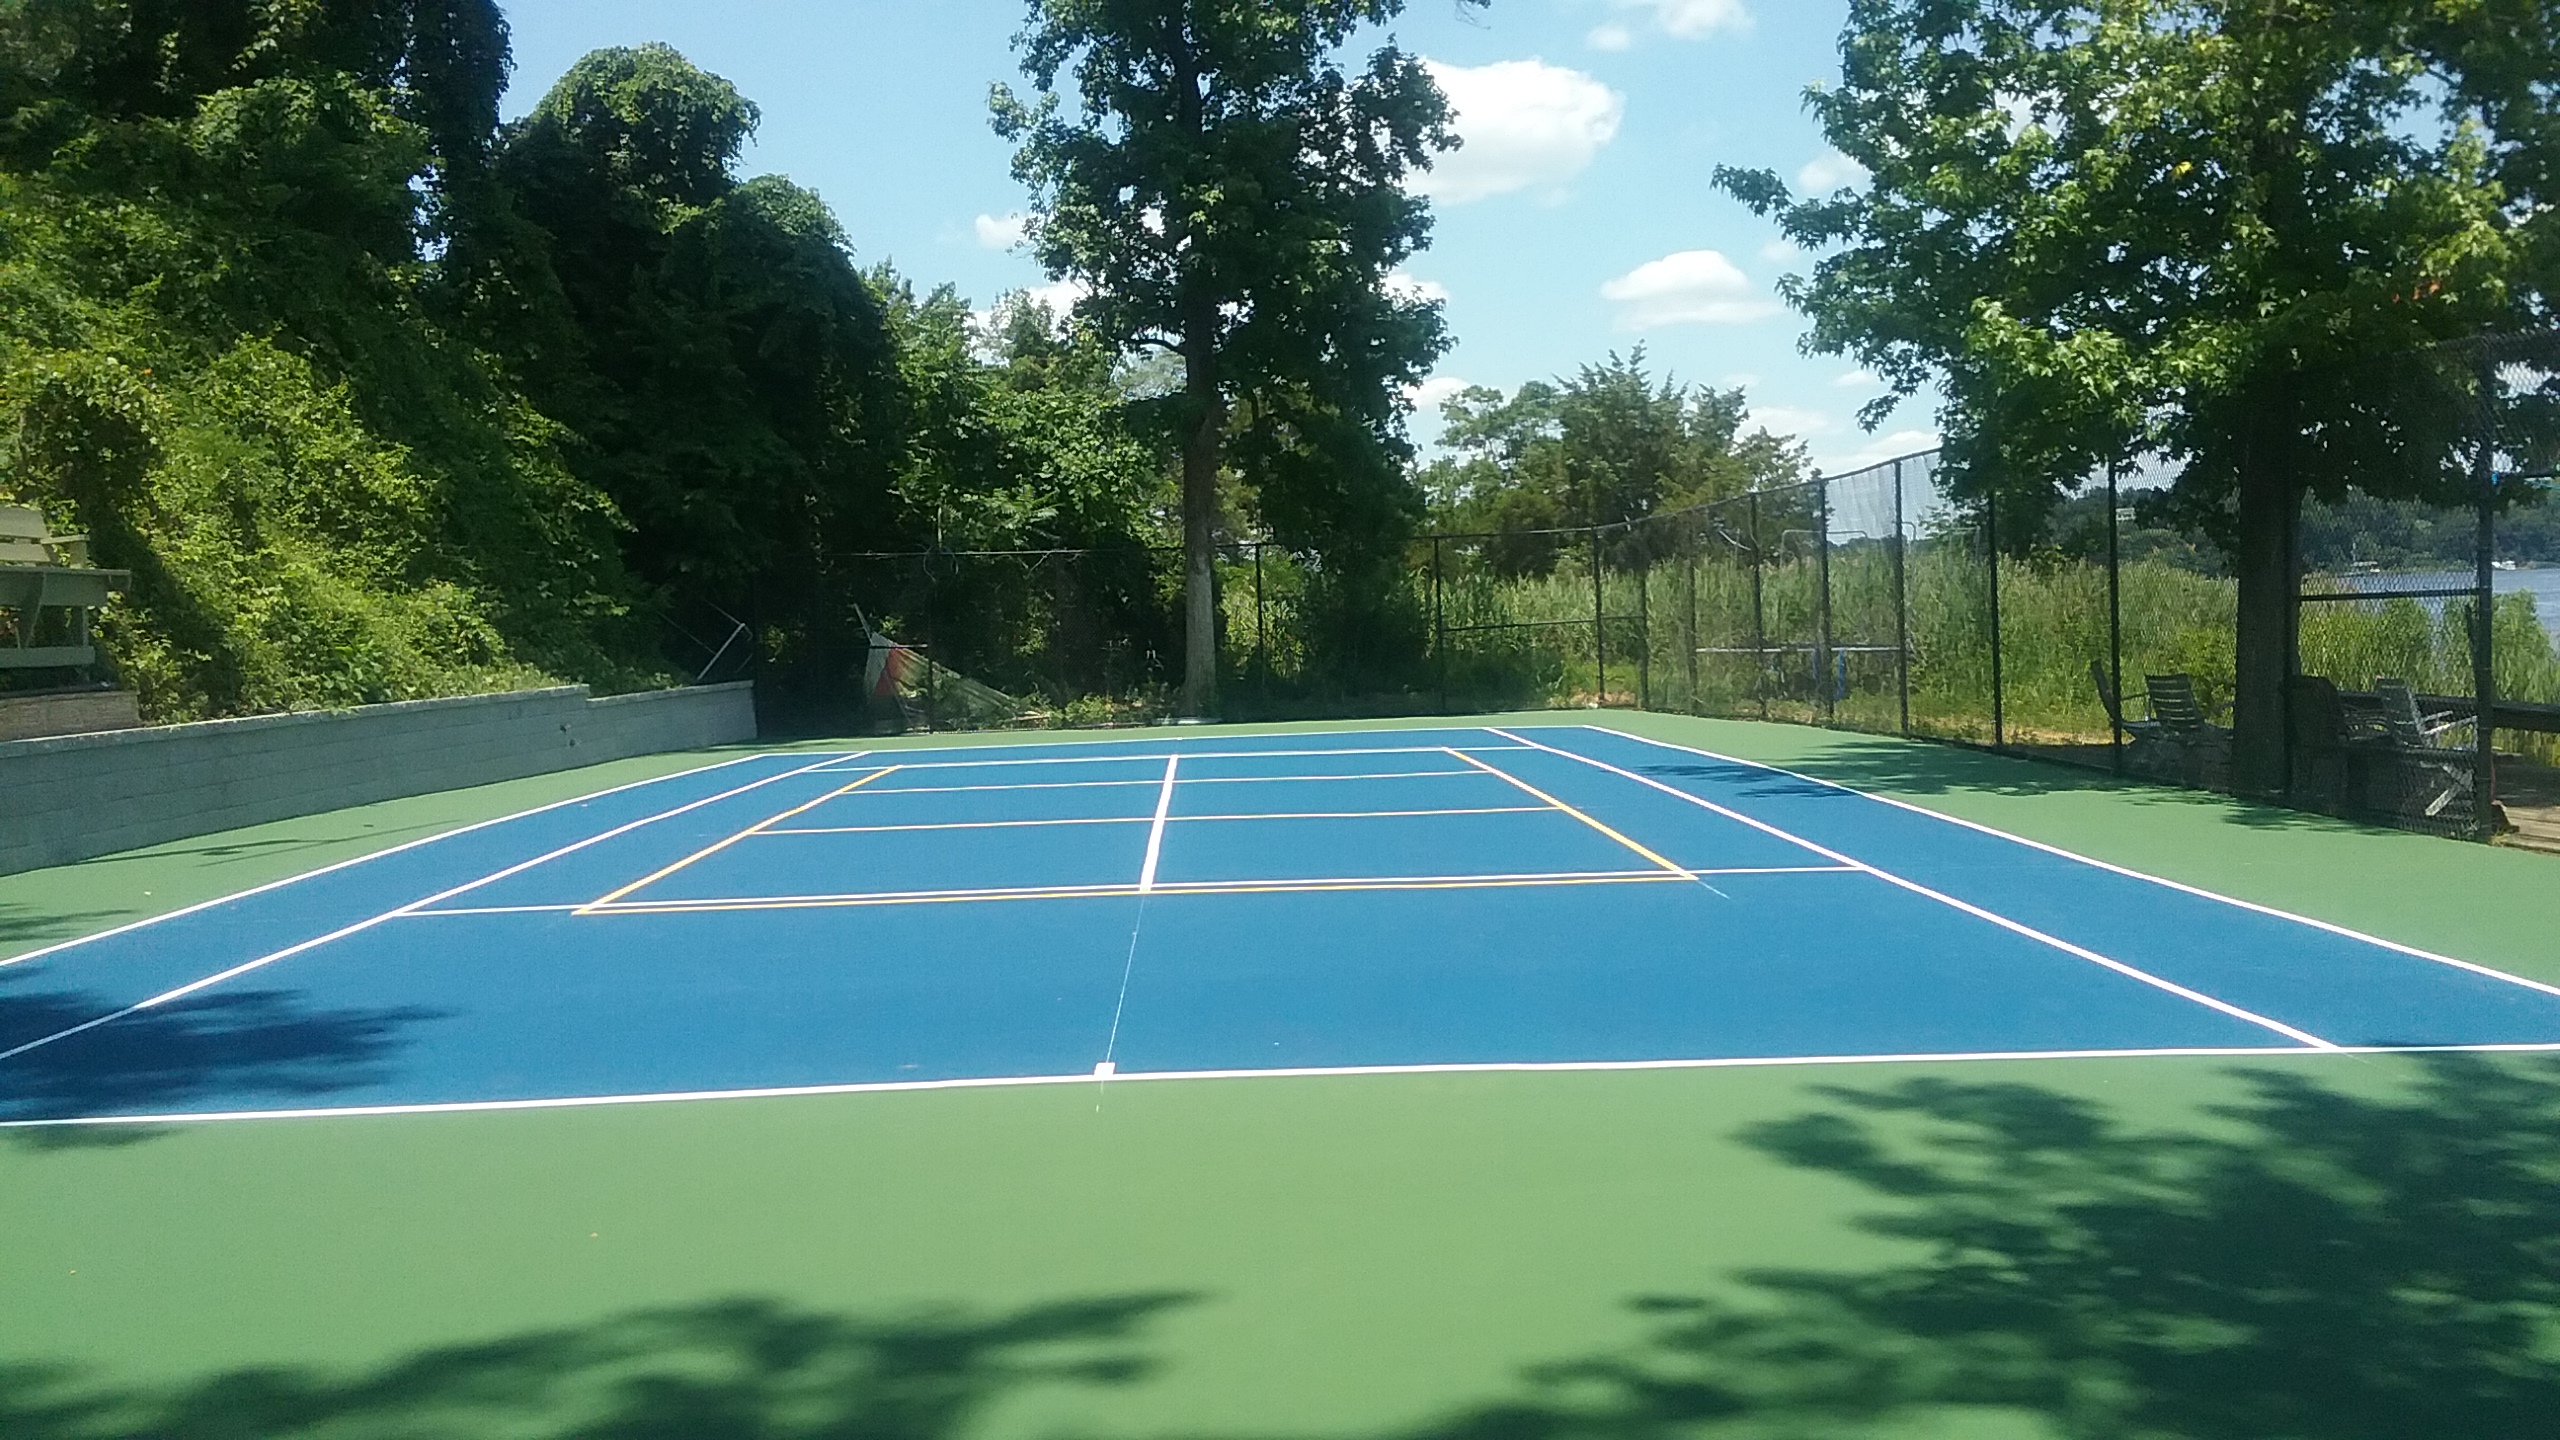 Commercial Tennis Court Construction